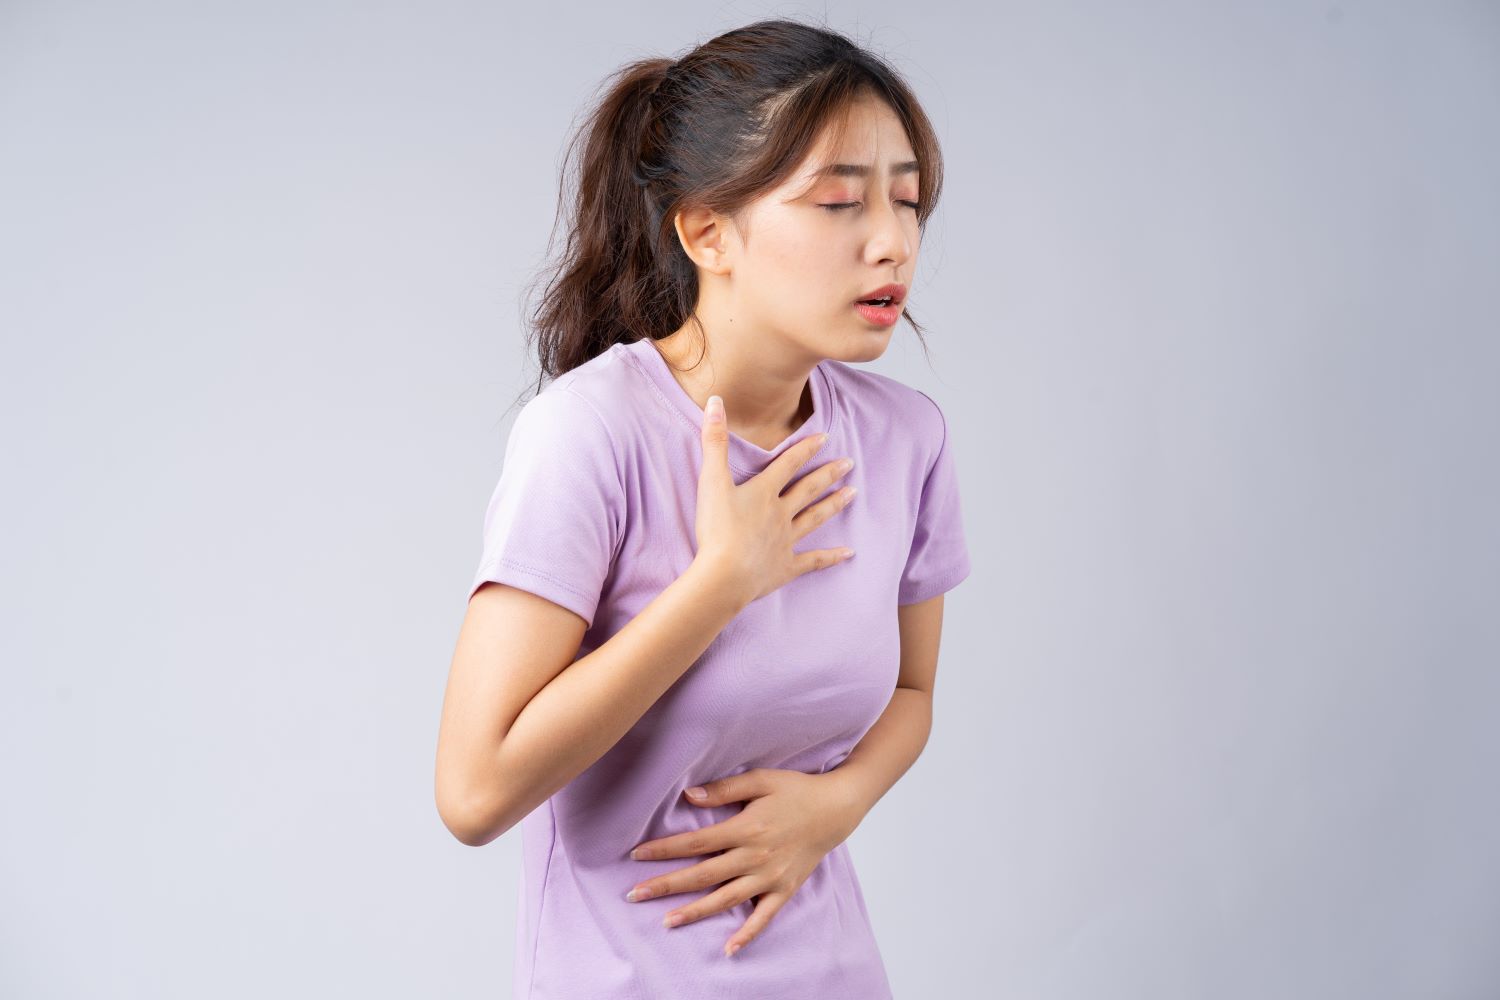 mulher com esofagite de refluxo com a mão na altura do esôfago